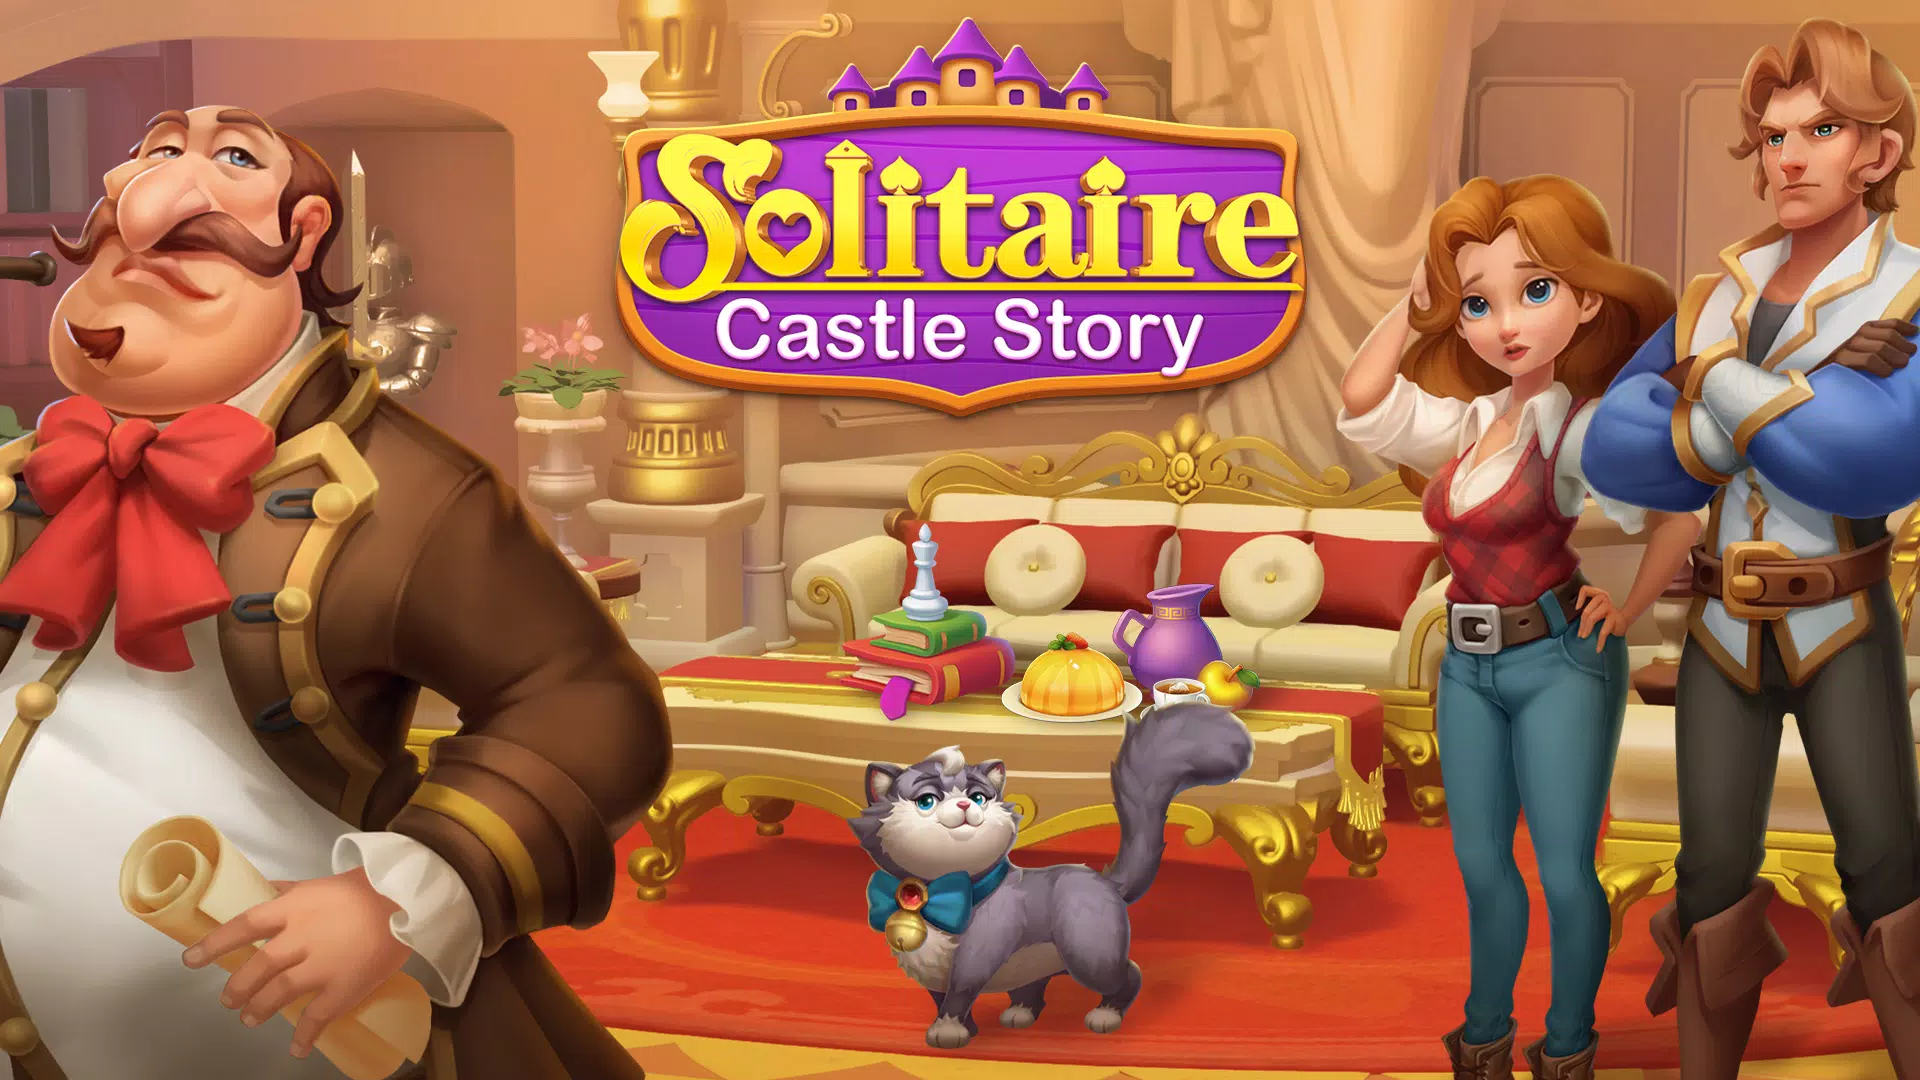 Solitaire Story 2 / História de Paciência 2 🔥 Jogue online